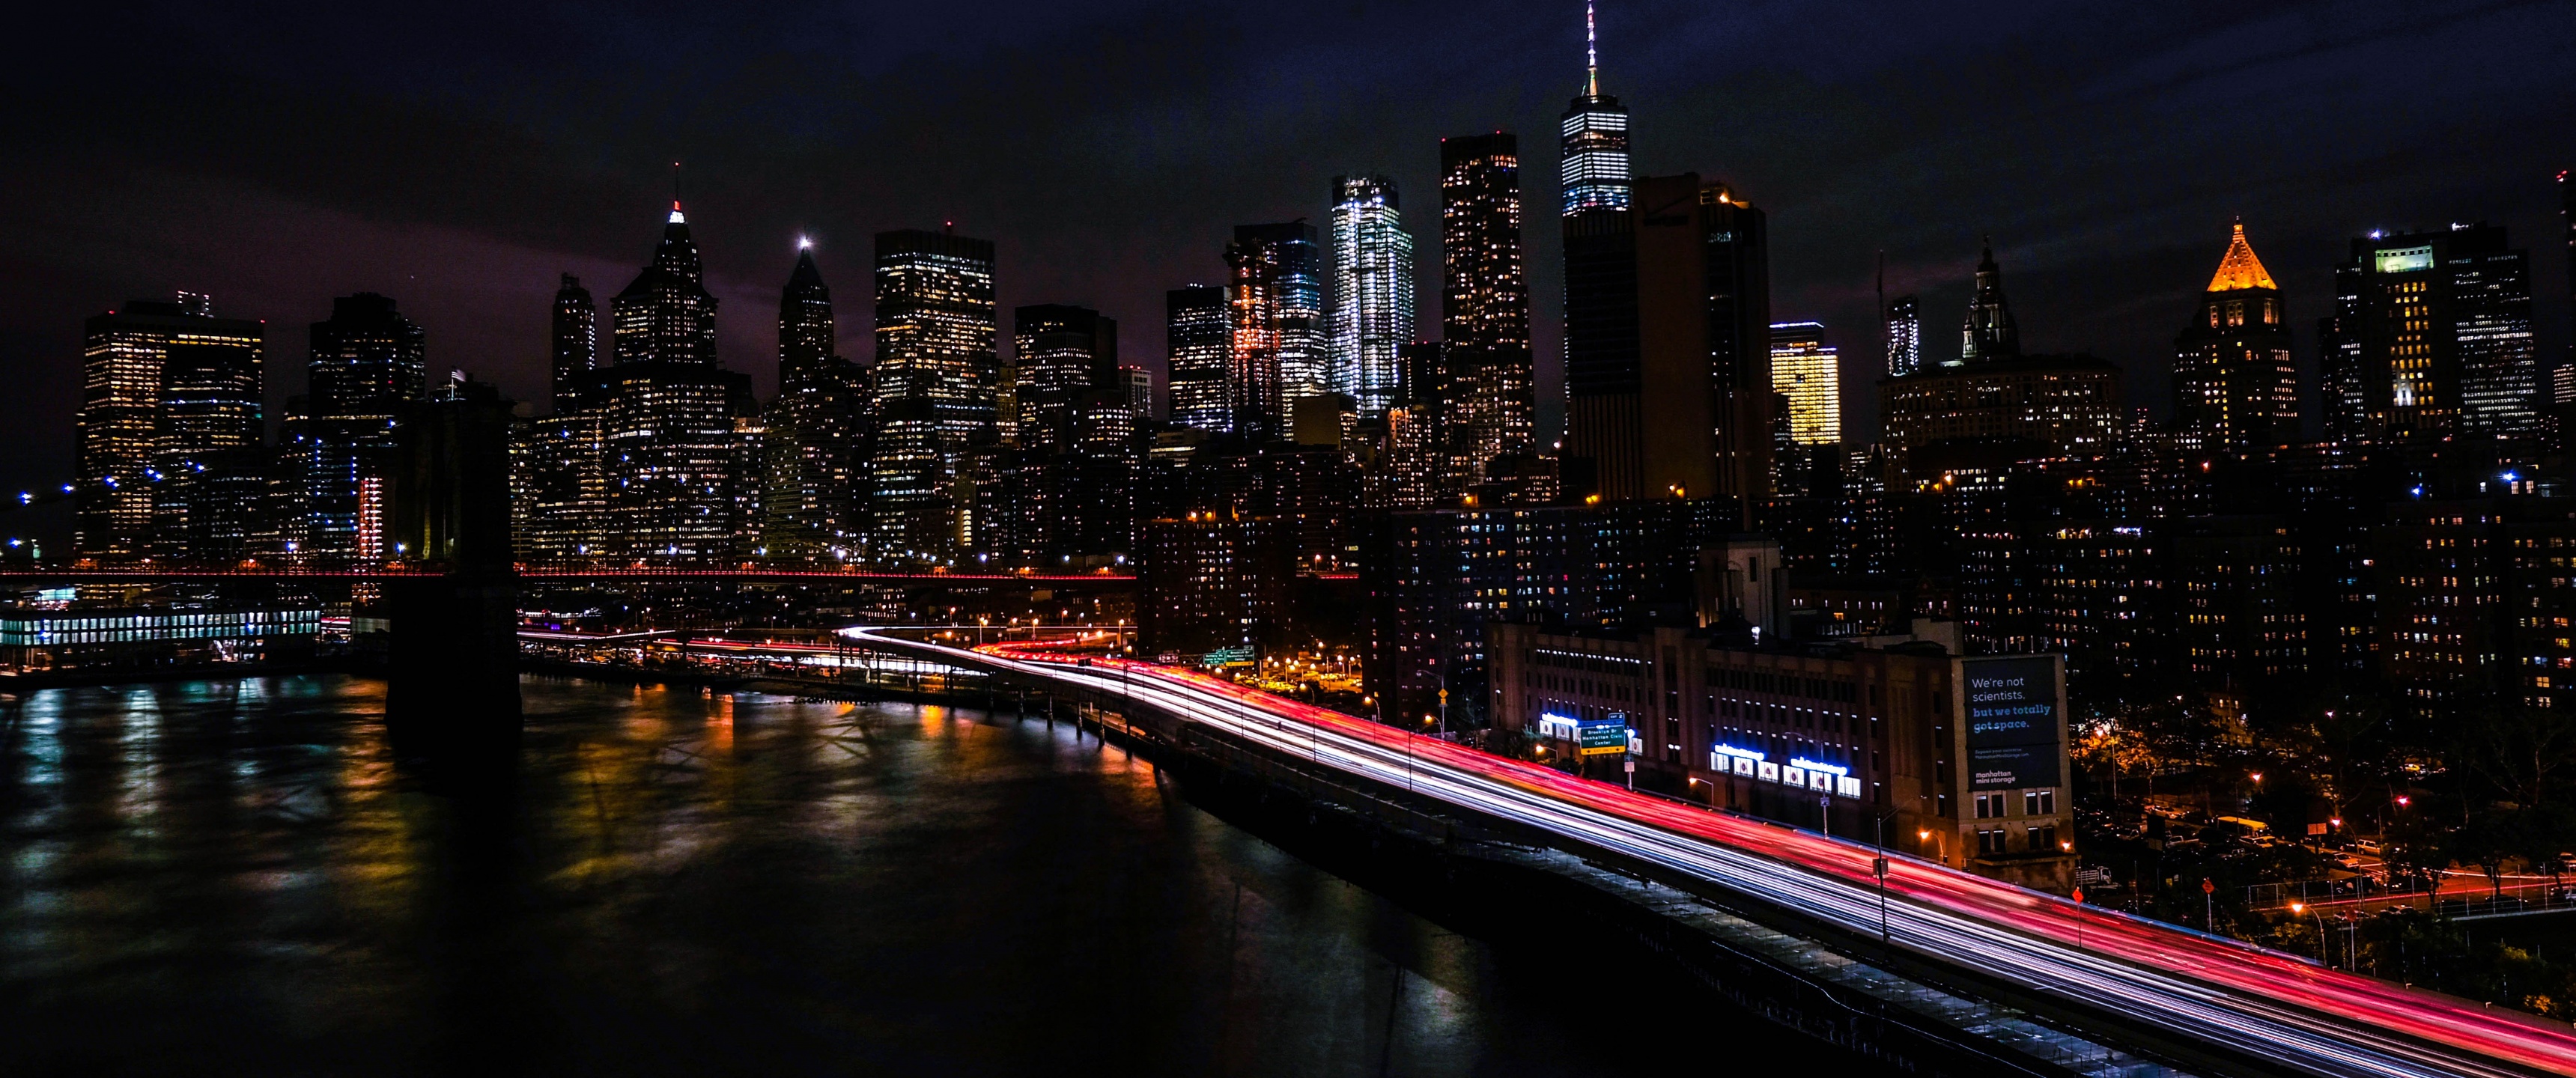 Mang vẻ đẹp hoàn hảo của thành phố New York vào màn hình của bạn với những hình nền 4K độ phân giải cao. Bầu trời đêm cùng các cityscape lung linh sẽ làm bạn phấn khích và đắm mình trong sự đẹp đến nao lòng của thành phố lớn.